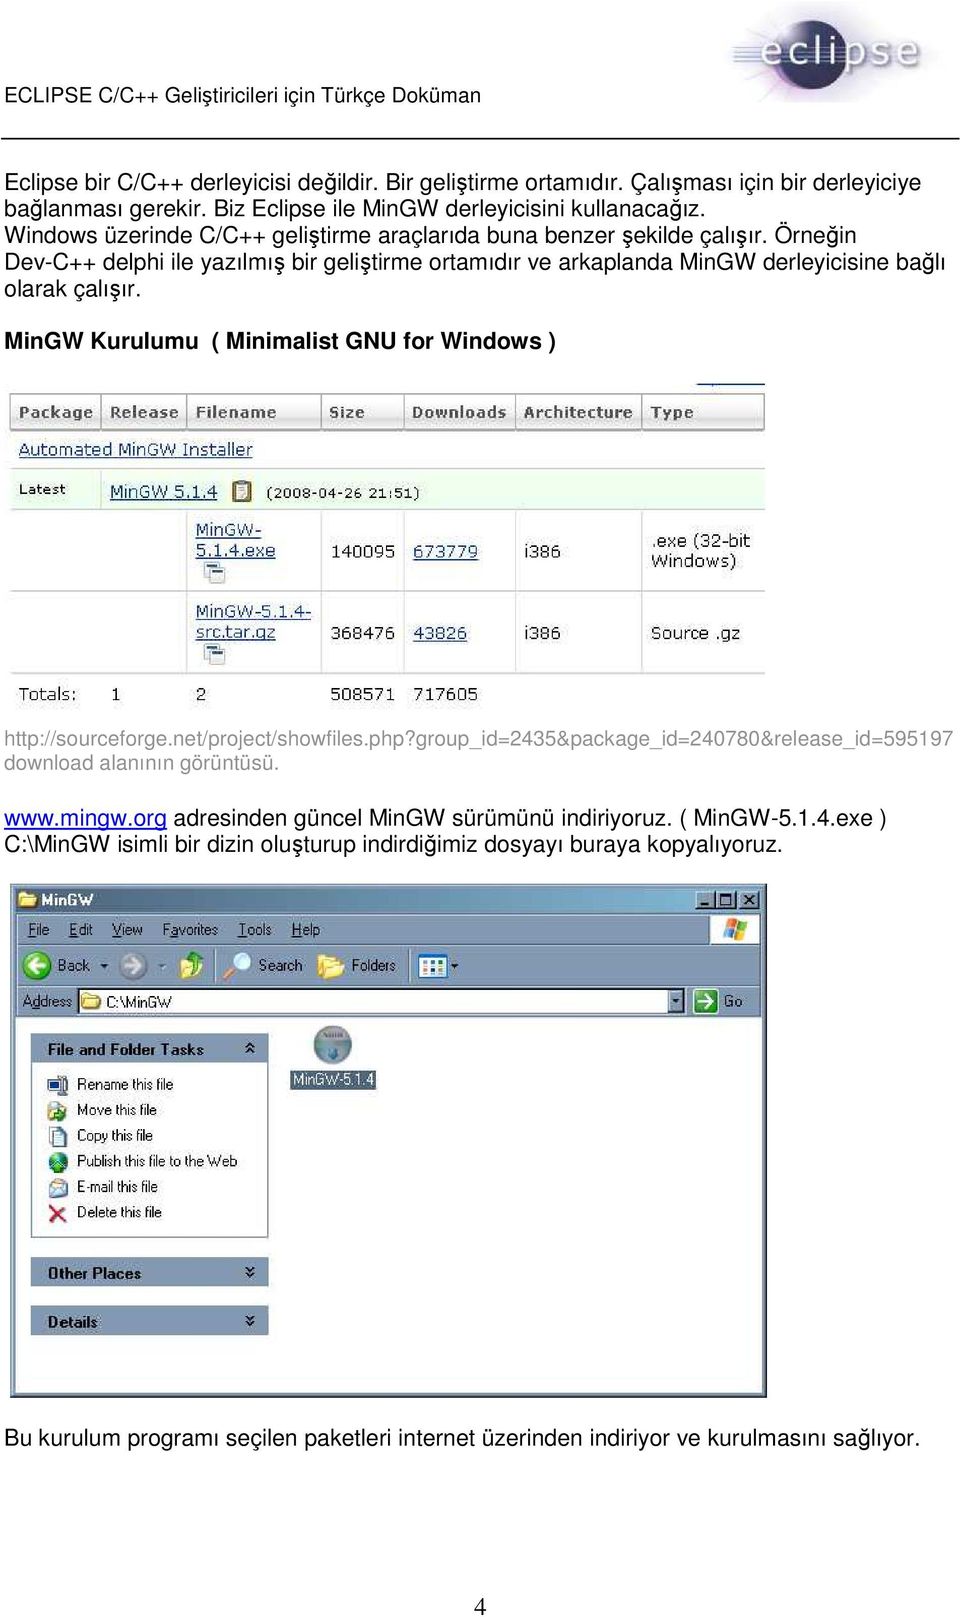 MinGW Kurulumu ( Minimalist GNU for Windows ) http://sourceforge.net/project/showfiles.php?group_id=2435&package_id=240780&release_id=595197 download alanının görüntüsü. www.mingw.